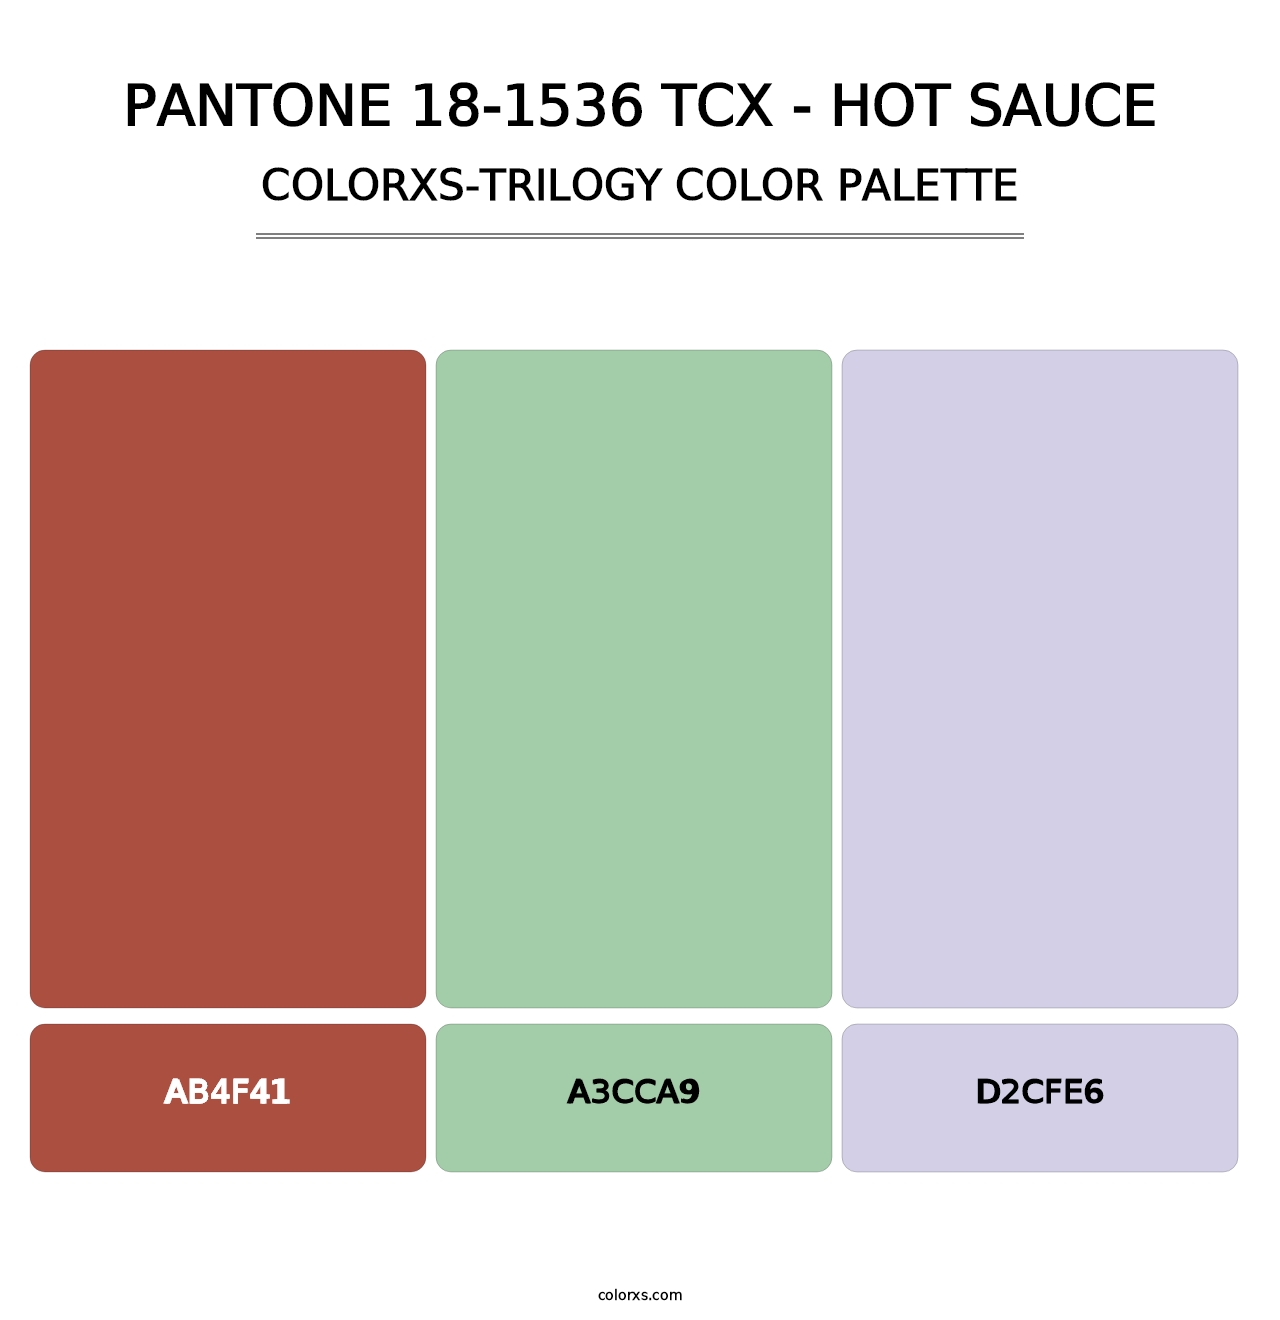 PANTONE 18-1536 TCX - Hot Sauce - Colorxs Trilogy Palette